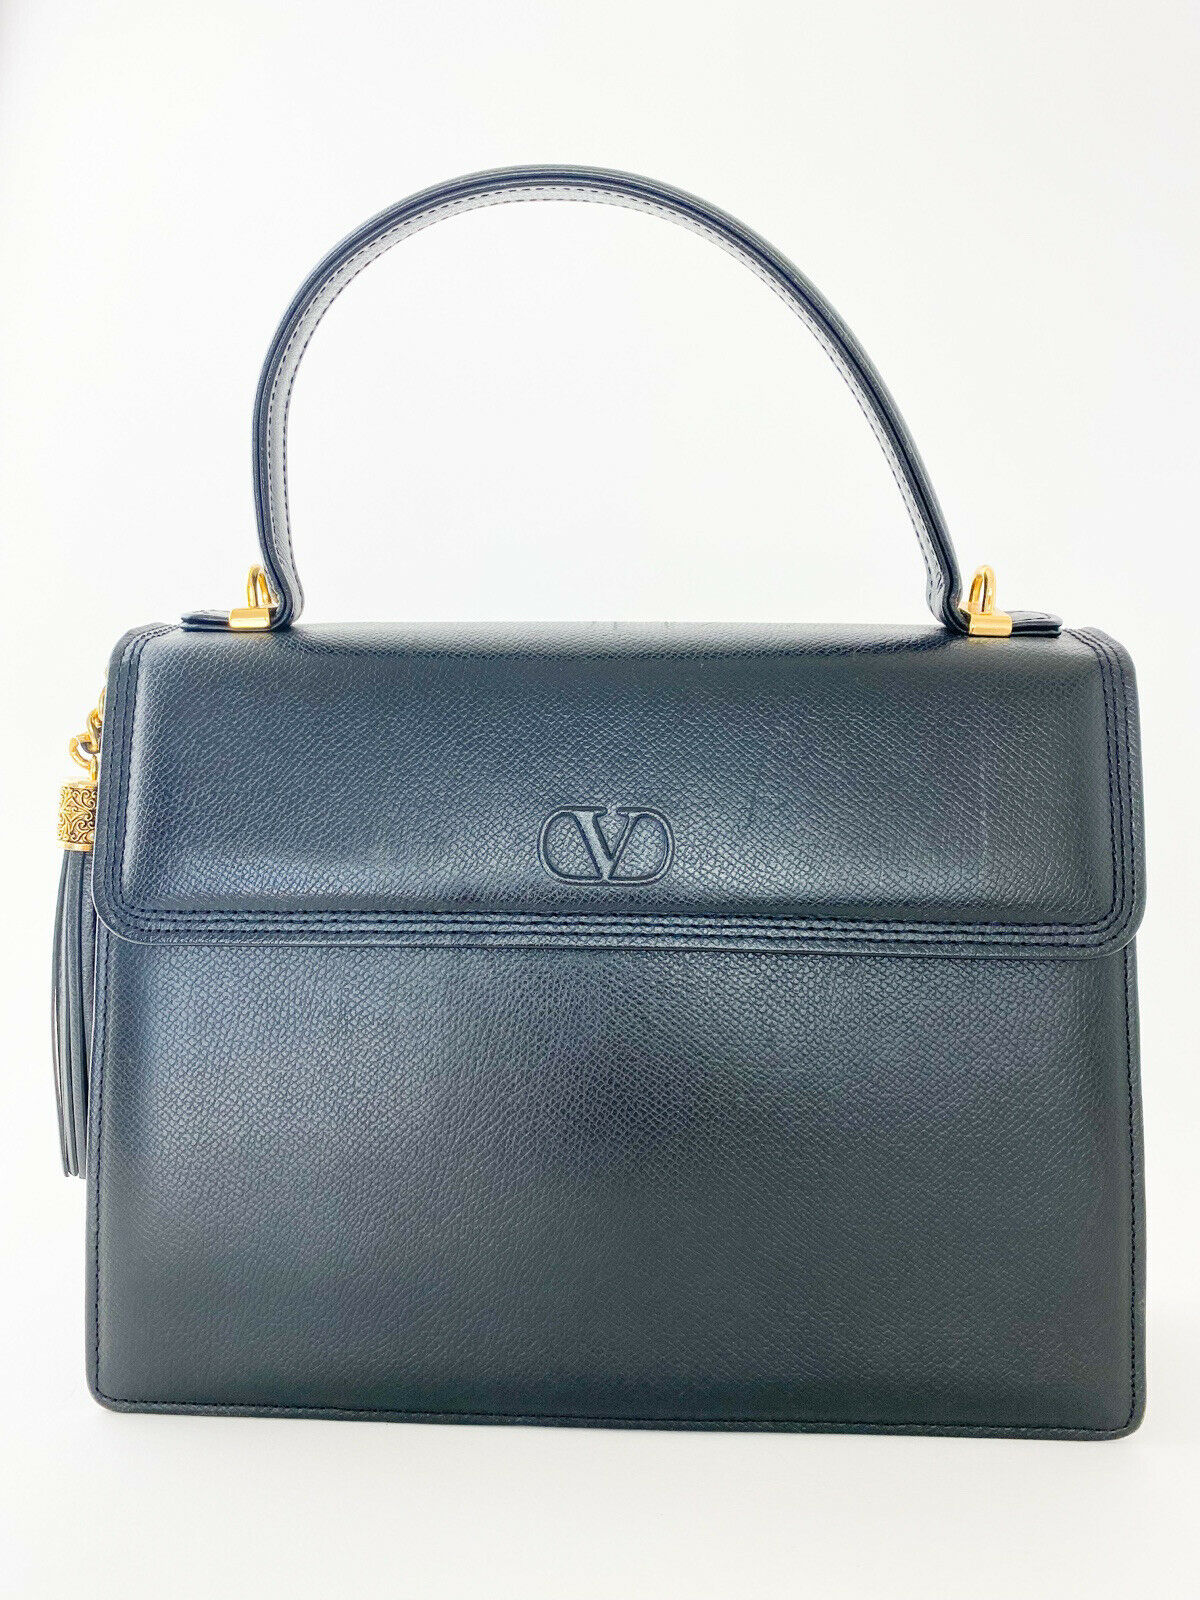 Valentino Garvani Leather Top Handle Handbag Black Tassel Fringe Vintage